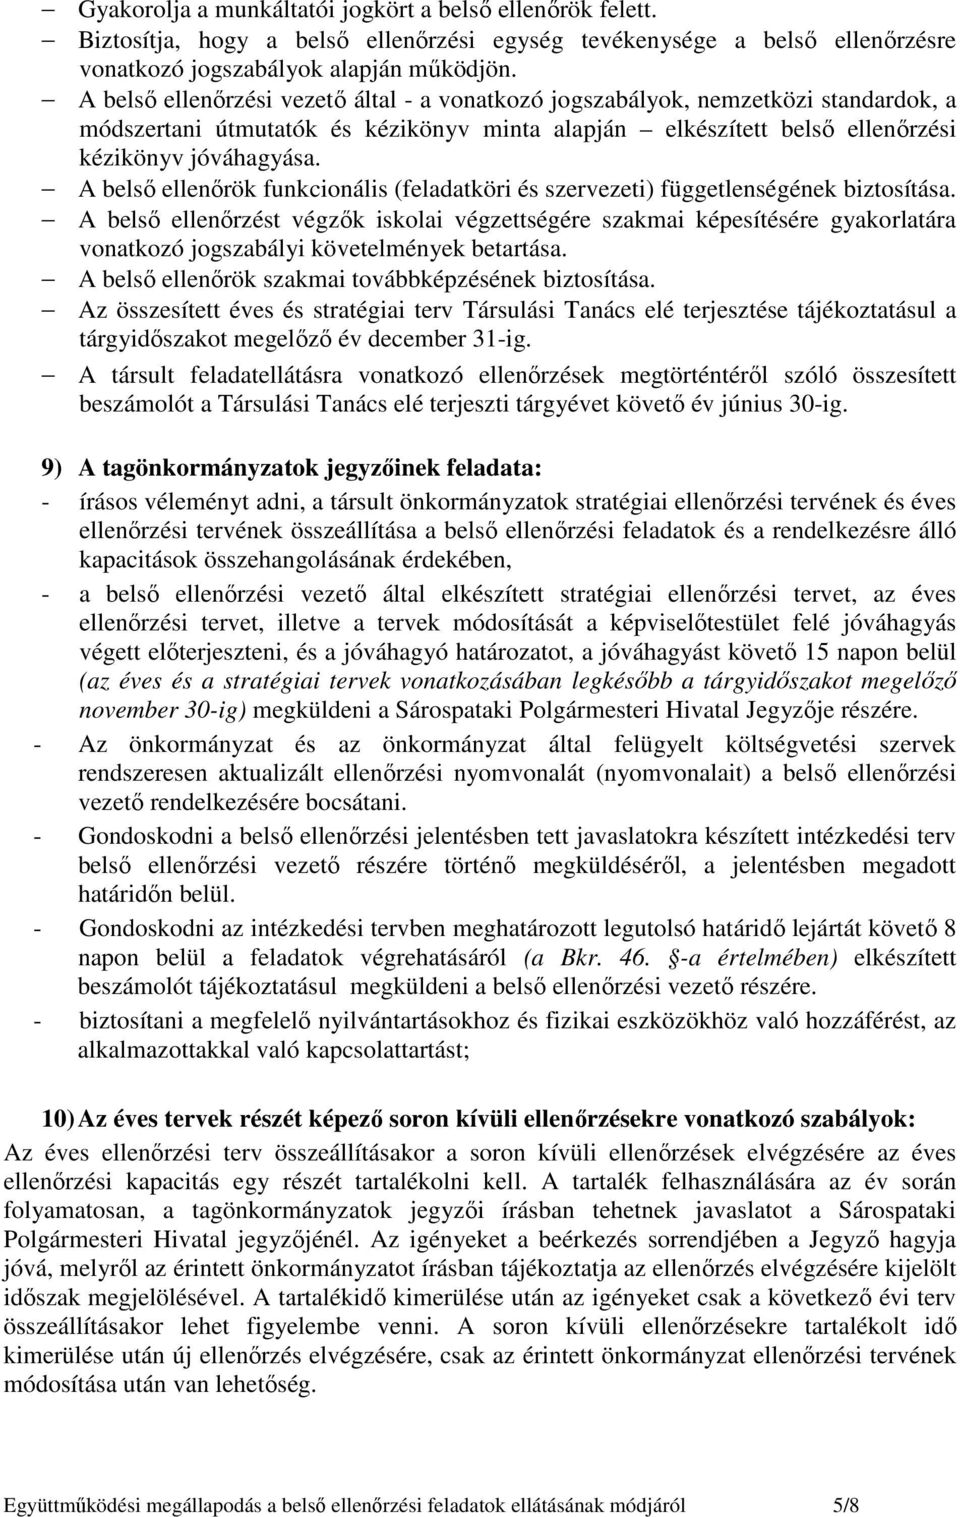 A belsı ellenırök funkcionális (feladatköri és szervezeti) függetlenségének biztosítása.